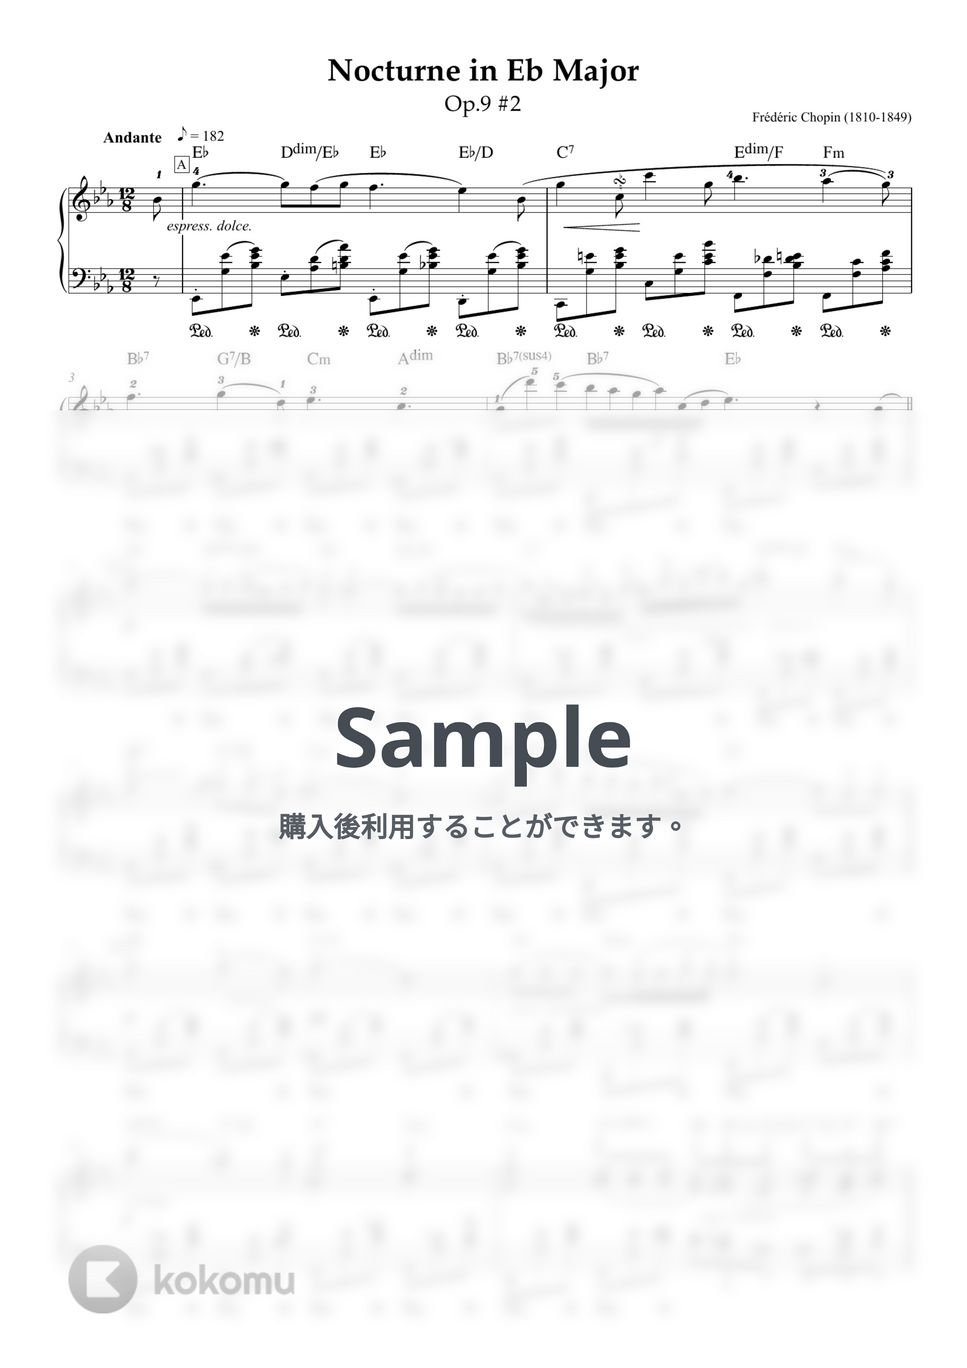 ショパン - 【ジャズコード付き】Noctune in Eb Major Op.9 No.2 - Frederic Chopin (ショパン作曲『ノクターン〜夜想曲第2番』コード付きピアノ譜) (ピアノ・ソロ/クラシック/コード付き) by ebony-ivory